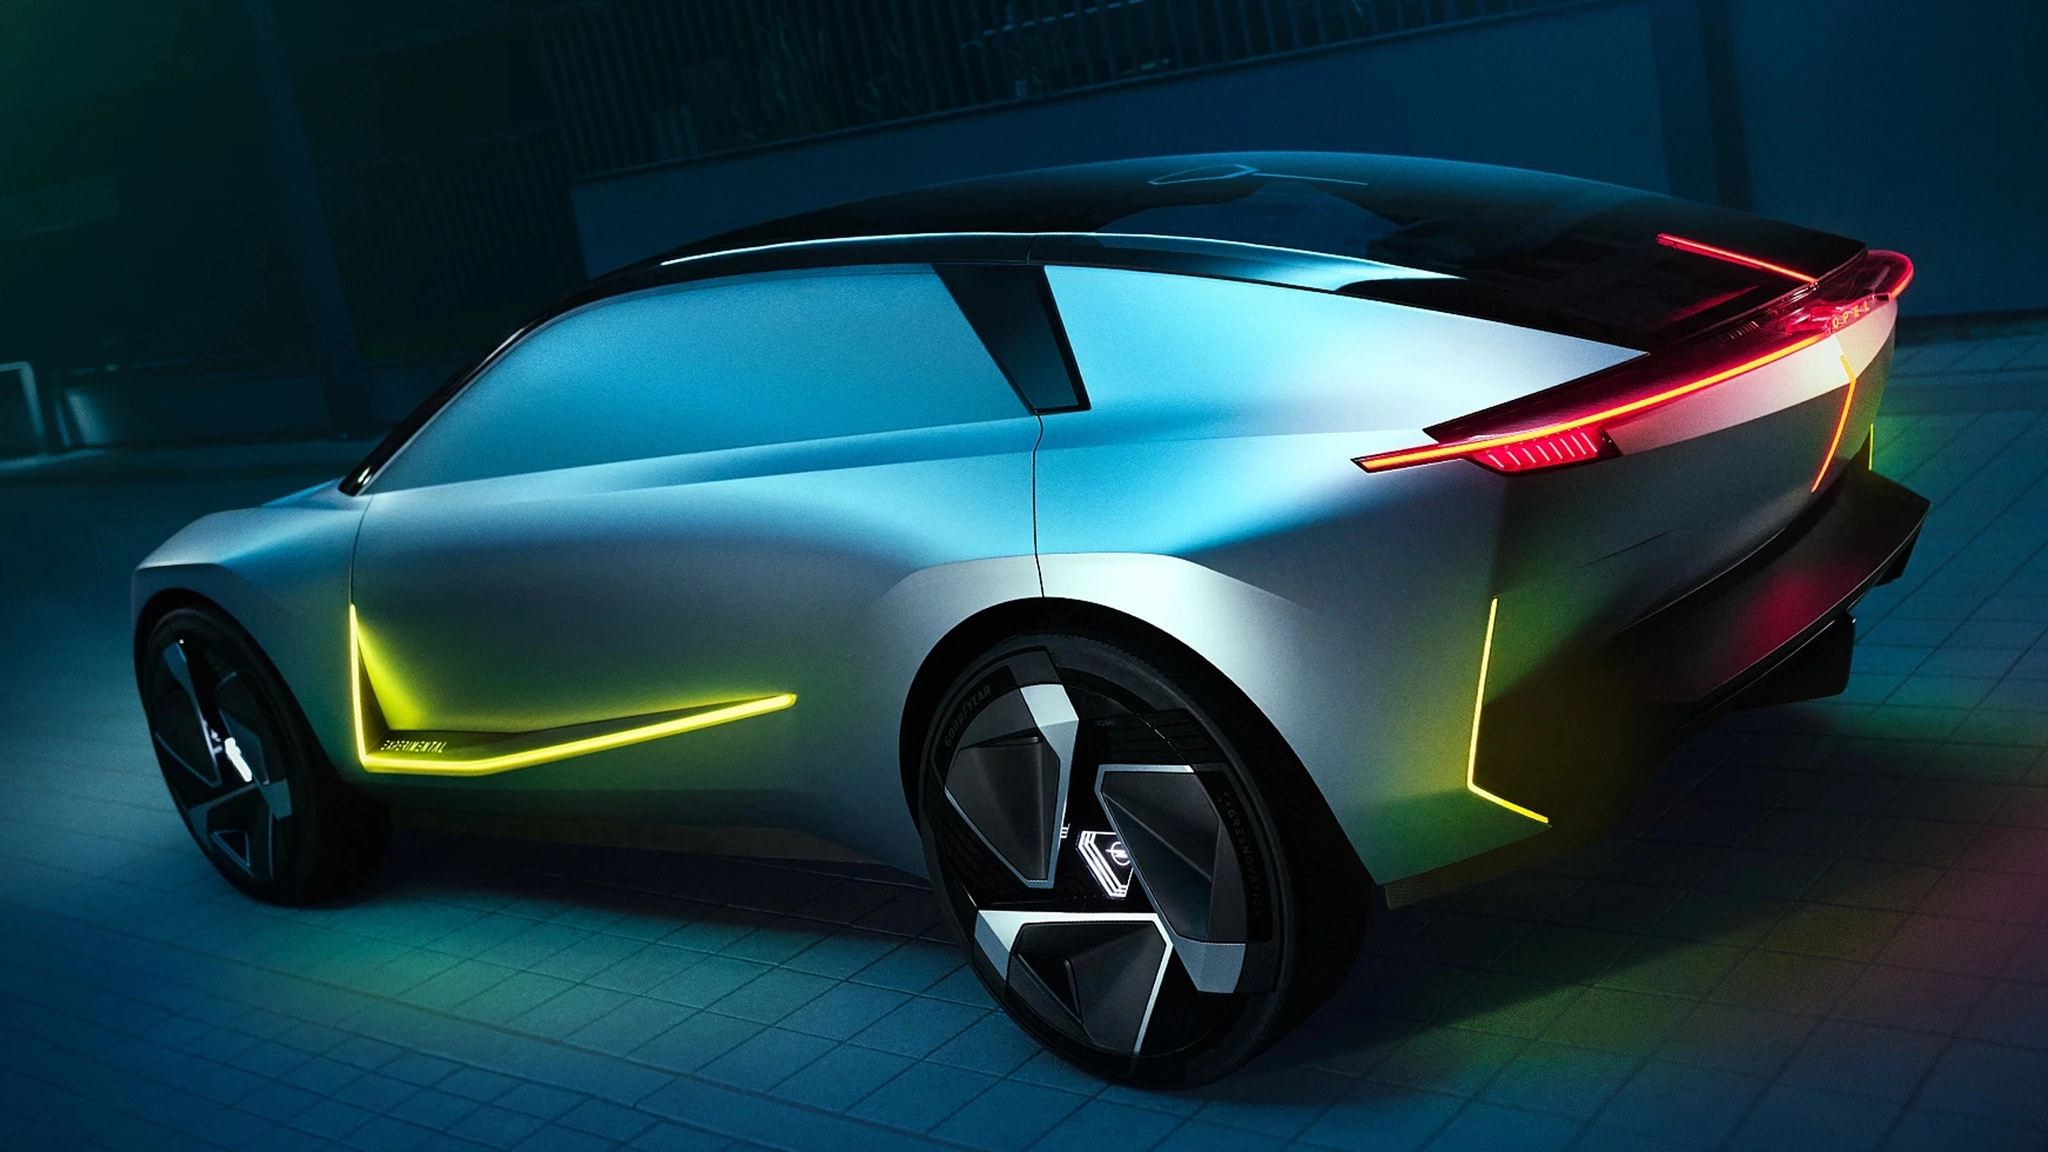 Opel Experimental "Işıkla Boyama" ile Geleceği Aydınlatıyor!